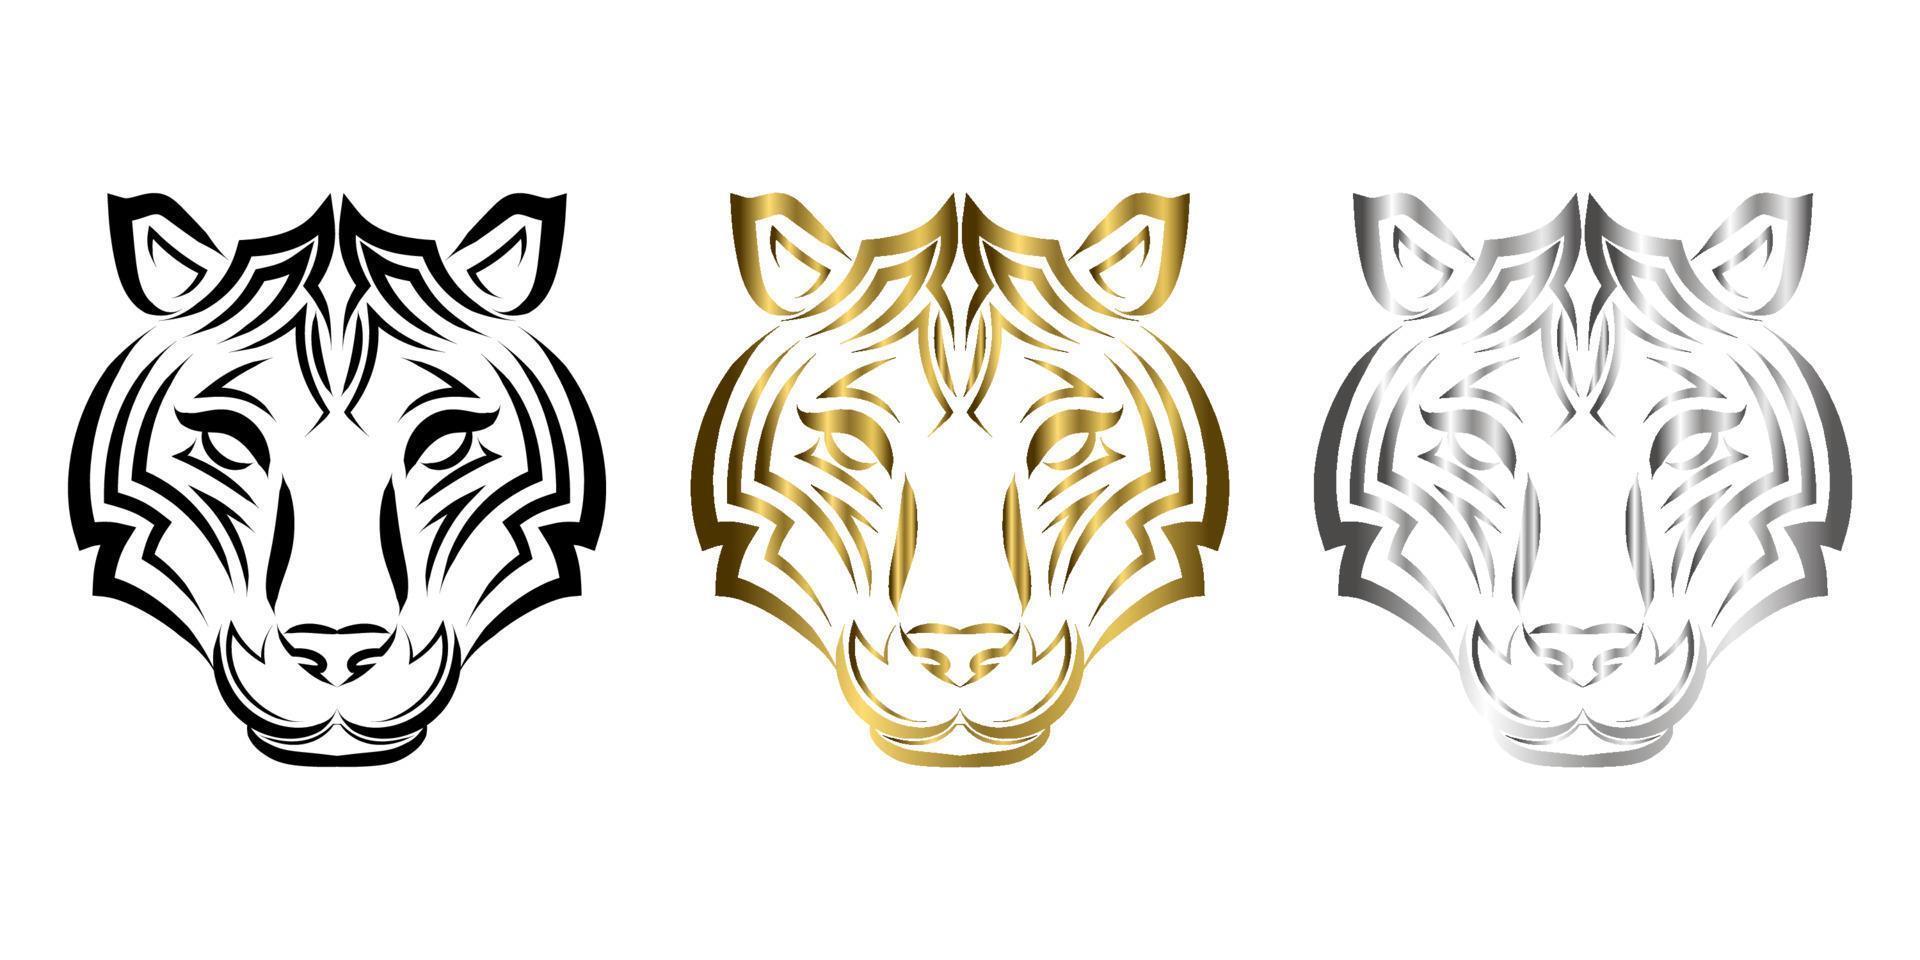 vetor de arte em linha da cabeça do tigre. adequado para uso como decoração ou logotipo.